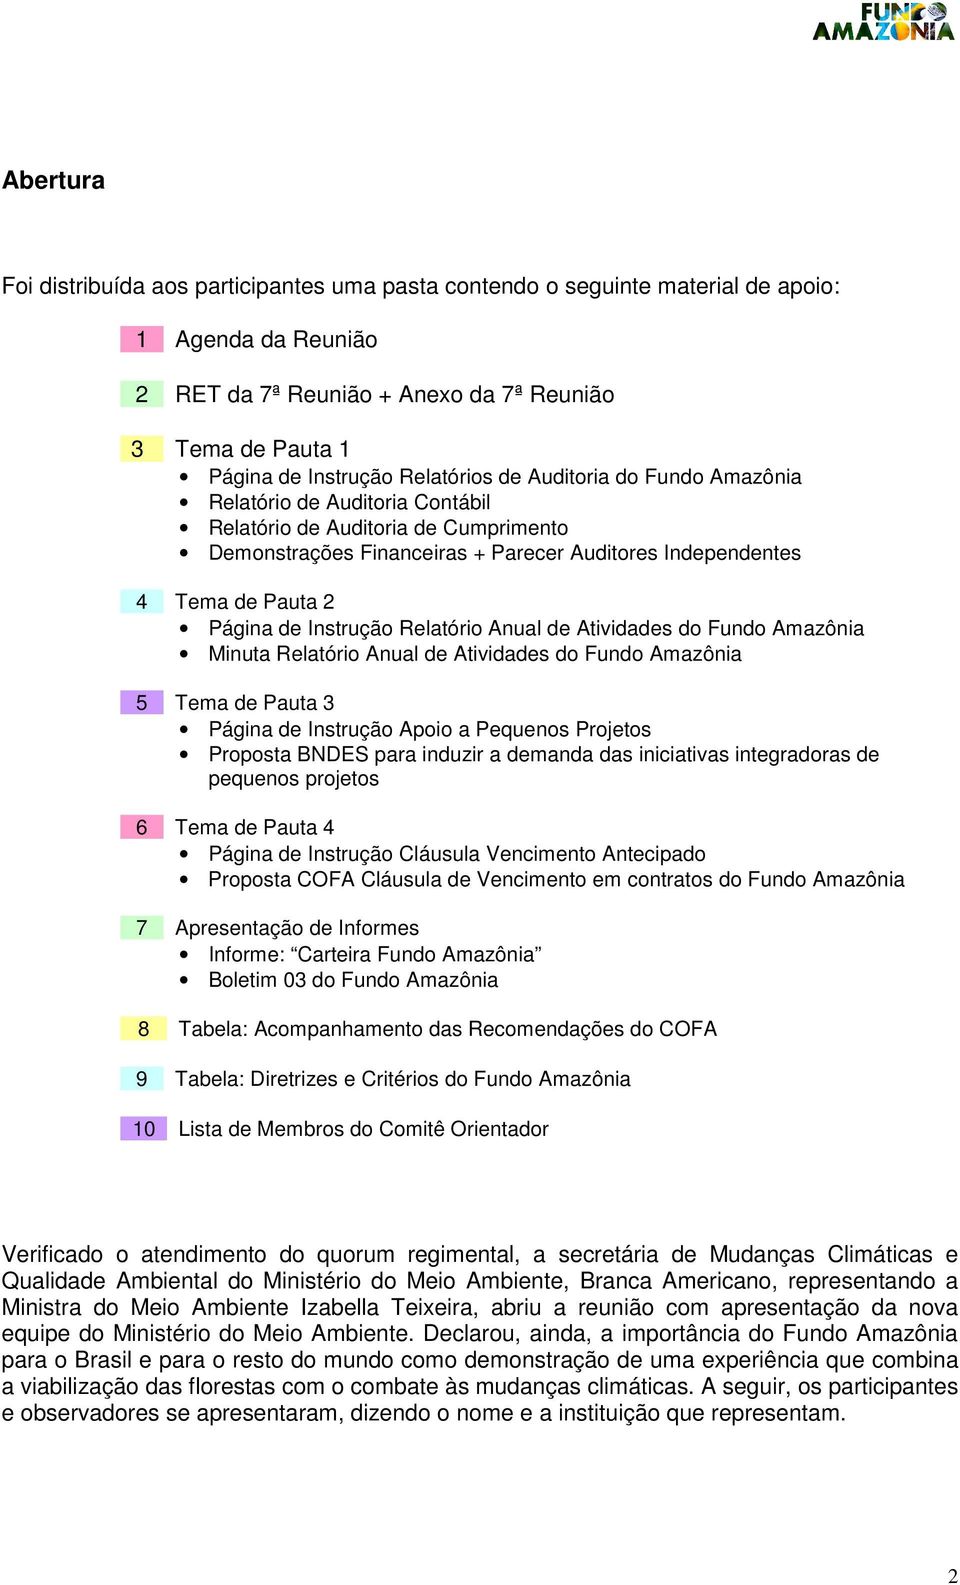 Instrução Relatório Anual de Atividades do Fundo Amazônia Minuta Relatório Anual de Atividades do Fundo Amazônia 5 Tema de Pauta 3 Página de Instrução Apoio a Pequenos Projetos Proposta BNDES para